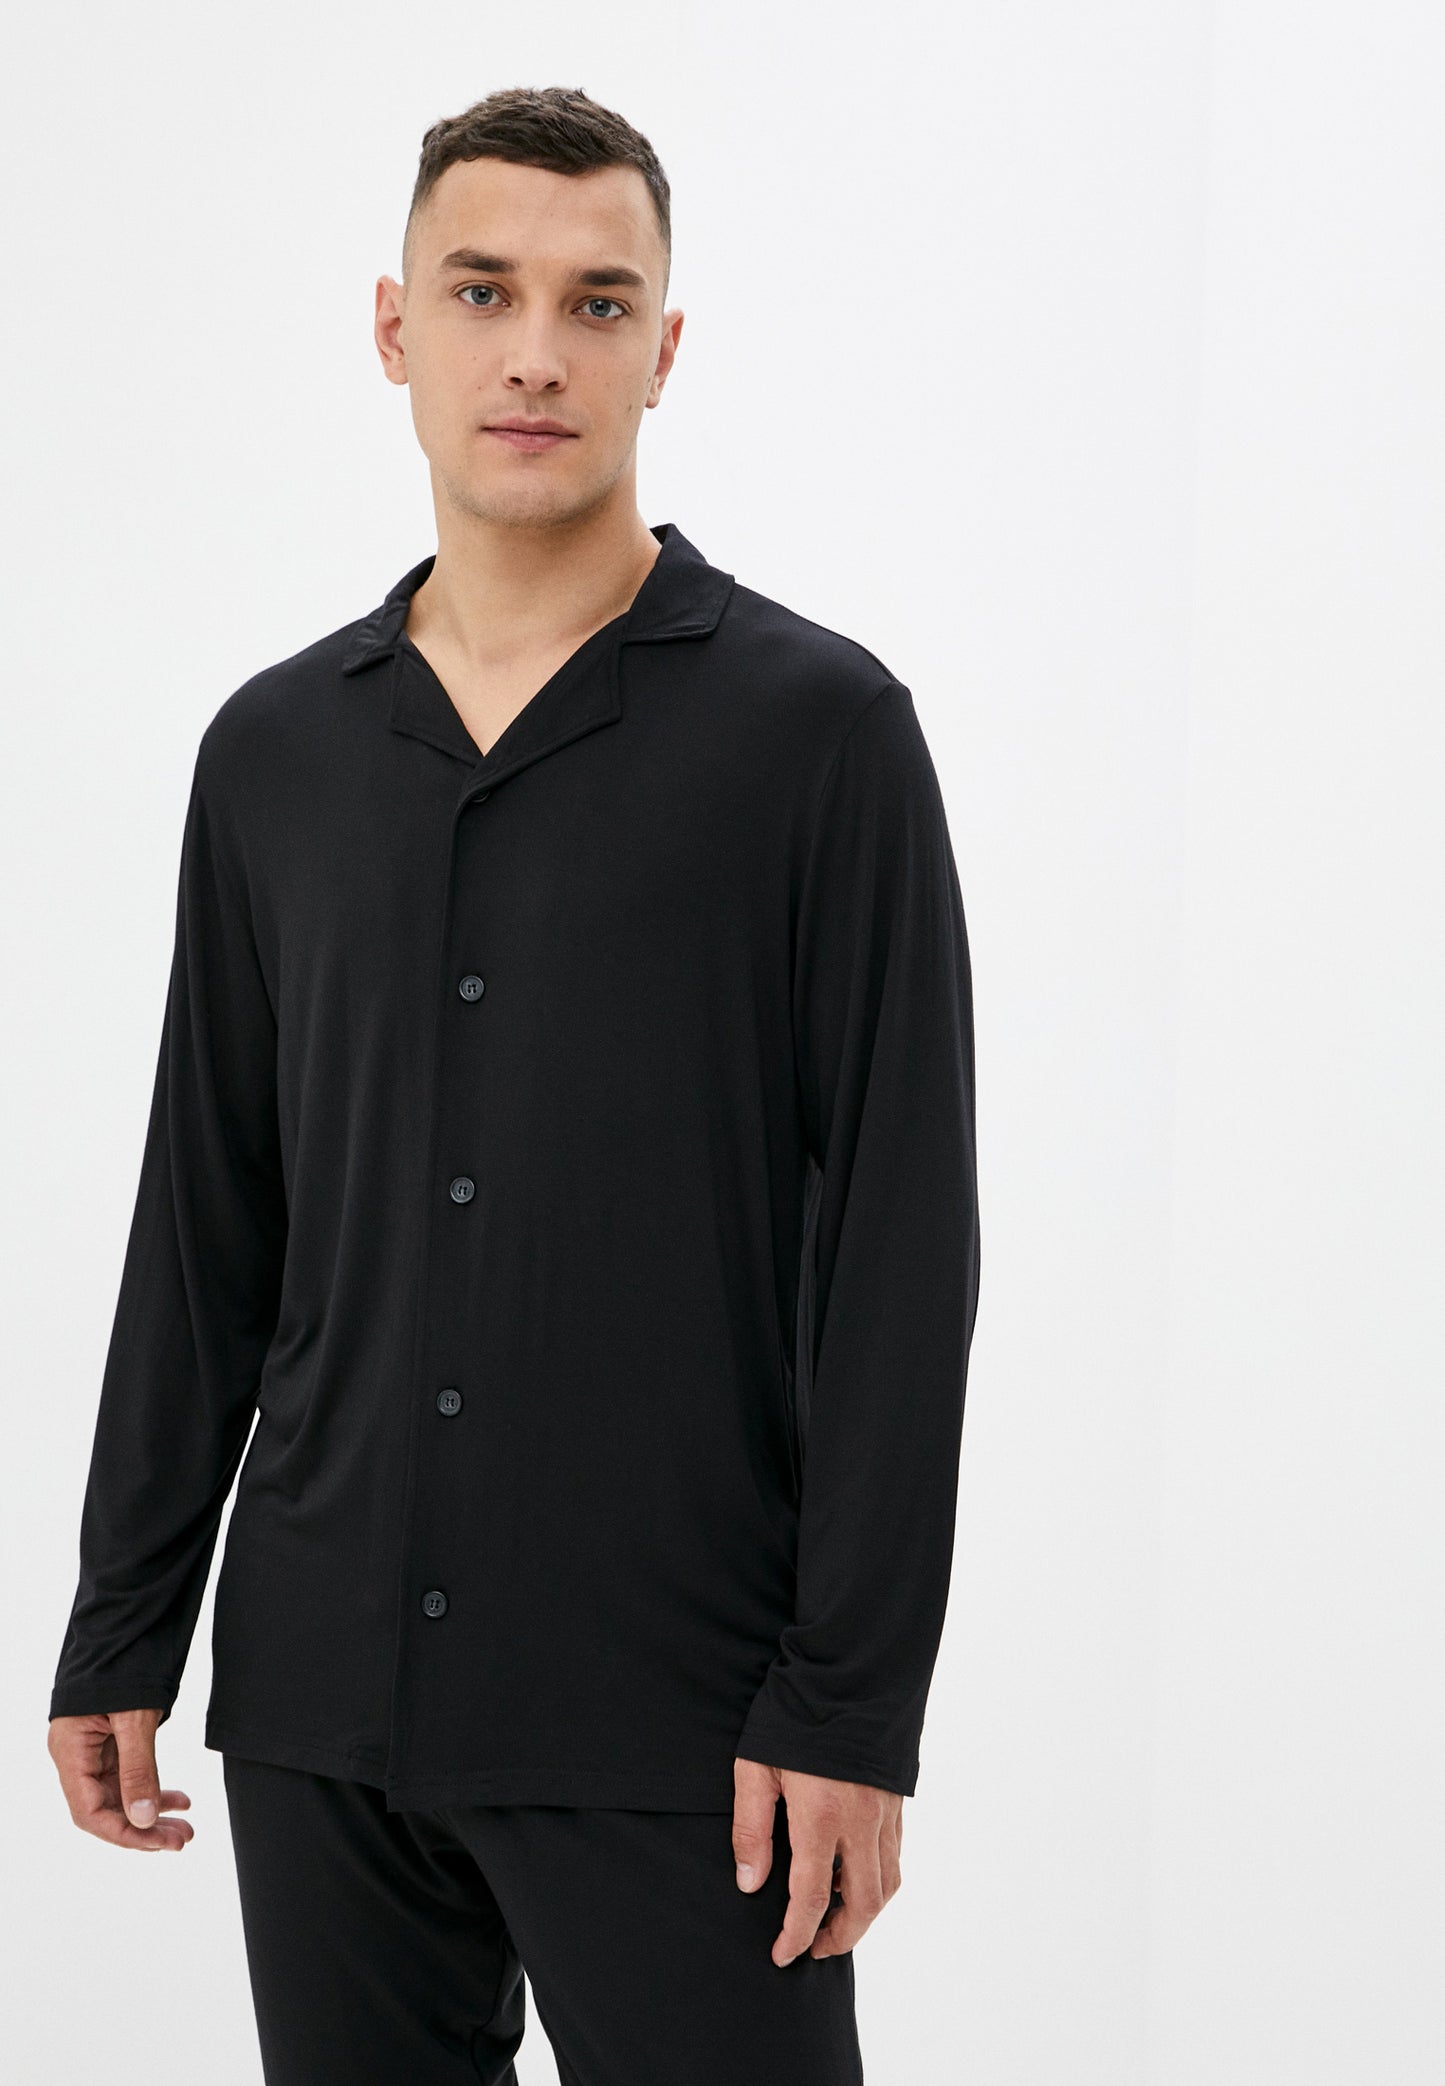 2teiliger Herren Pyjama LMS-6114 Black